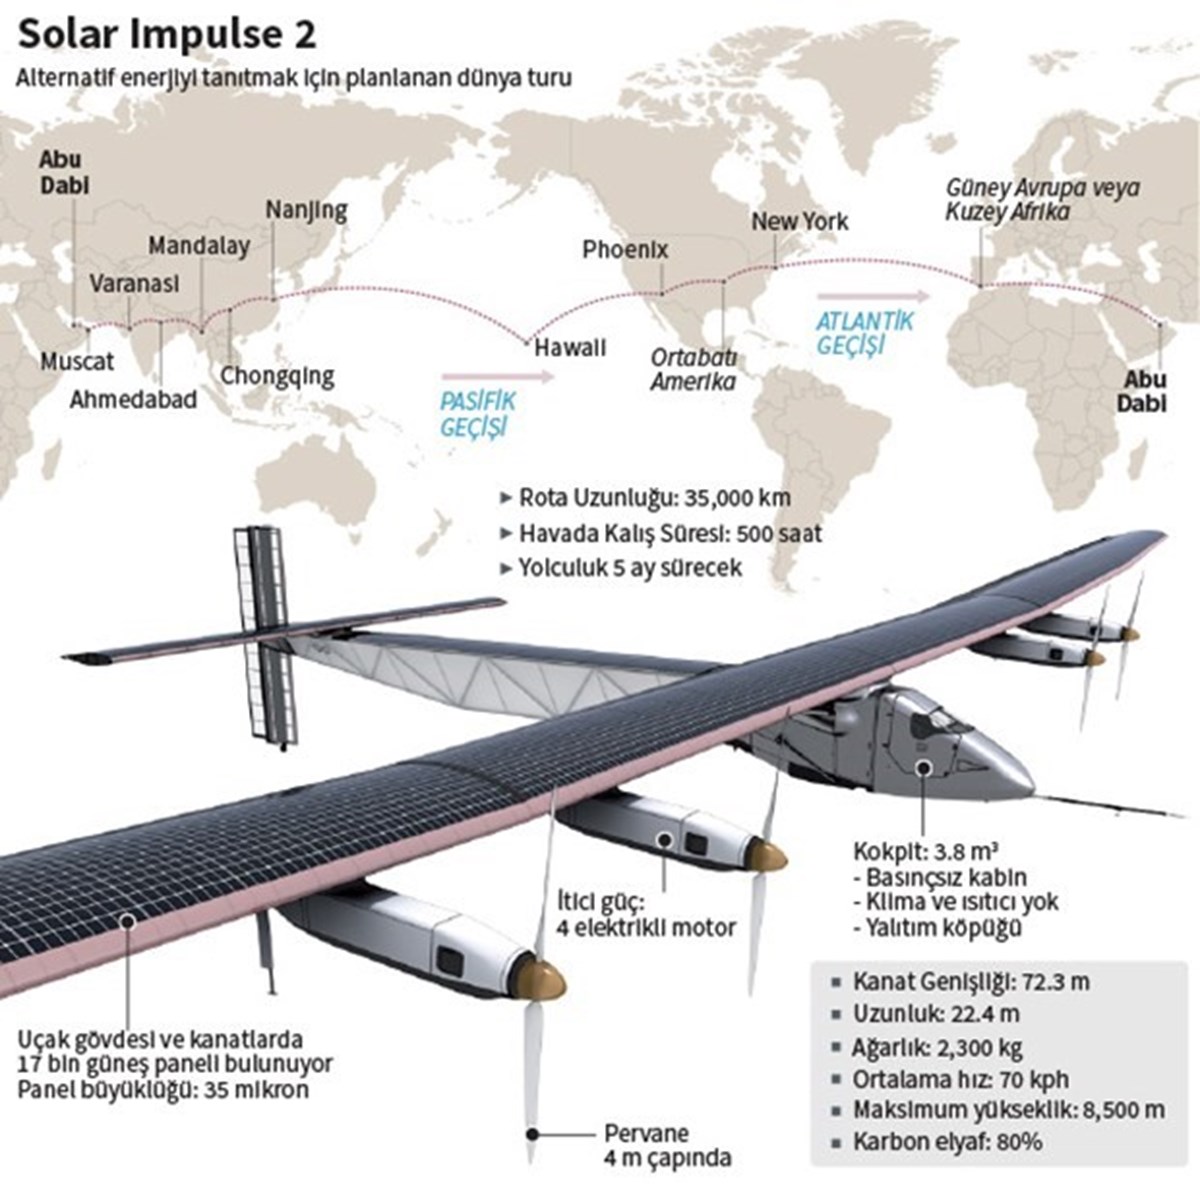 Tek enerji kaynağı güneş olan uçağın kanatlarında 17 bin güneş paneli bulunuyor.